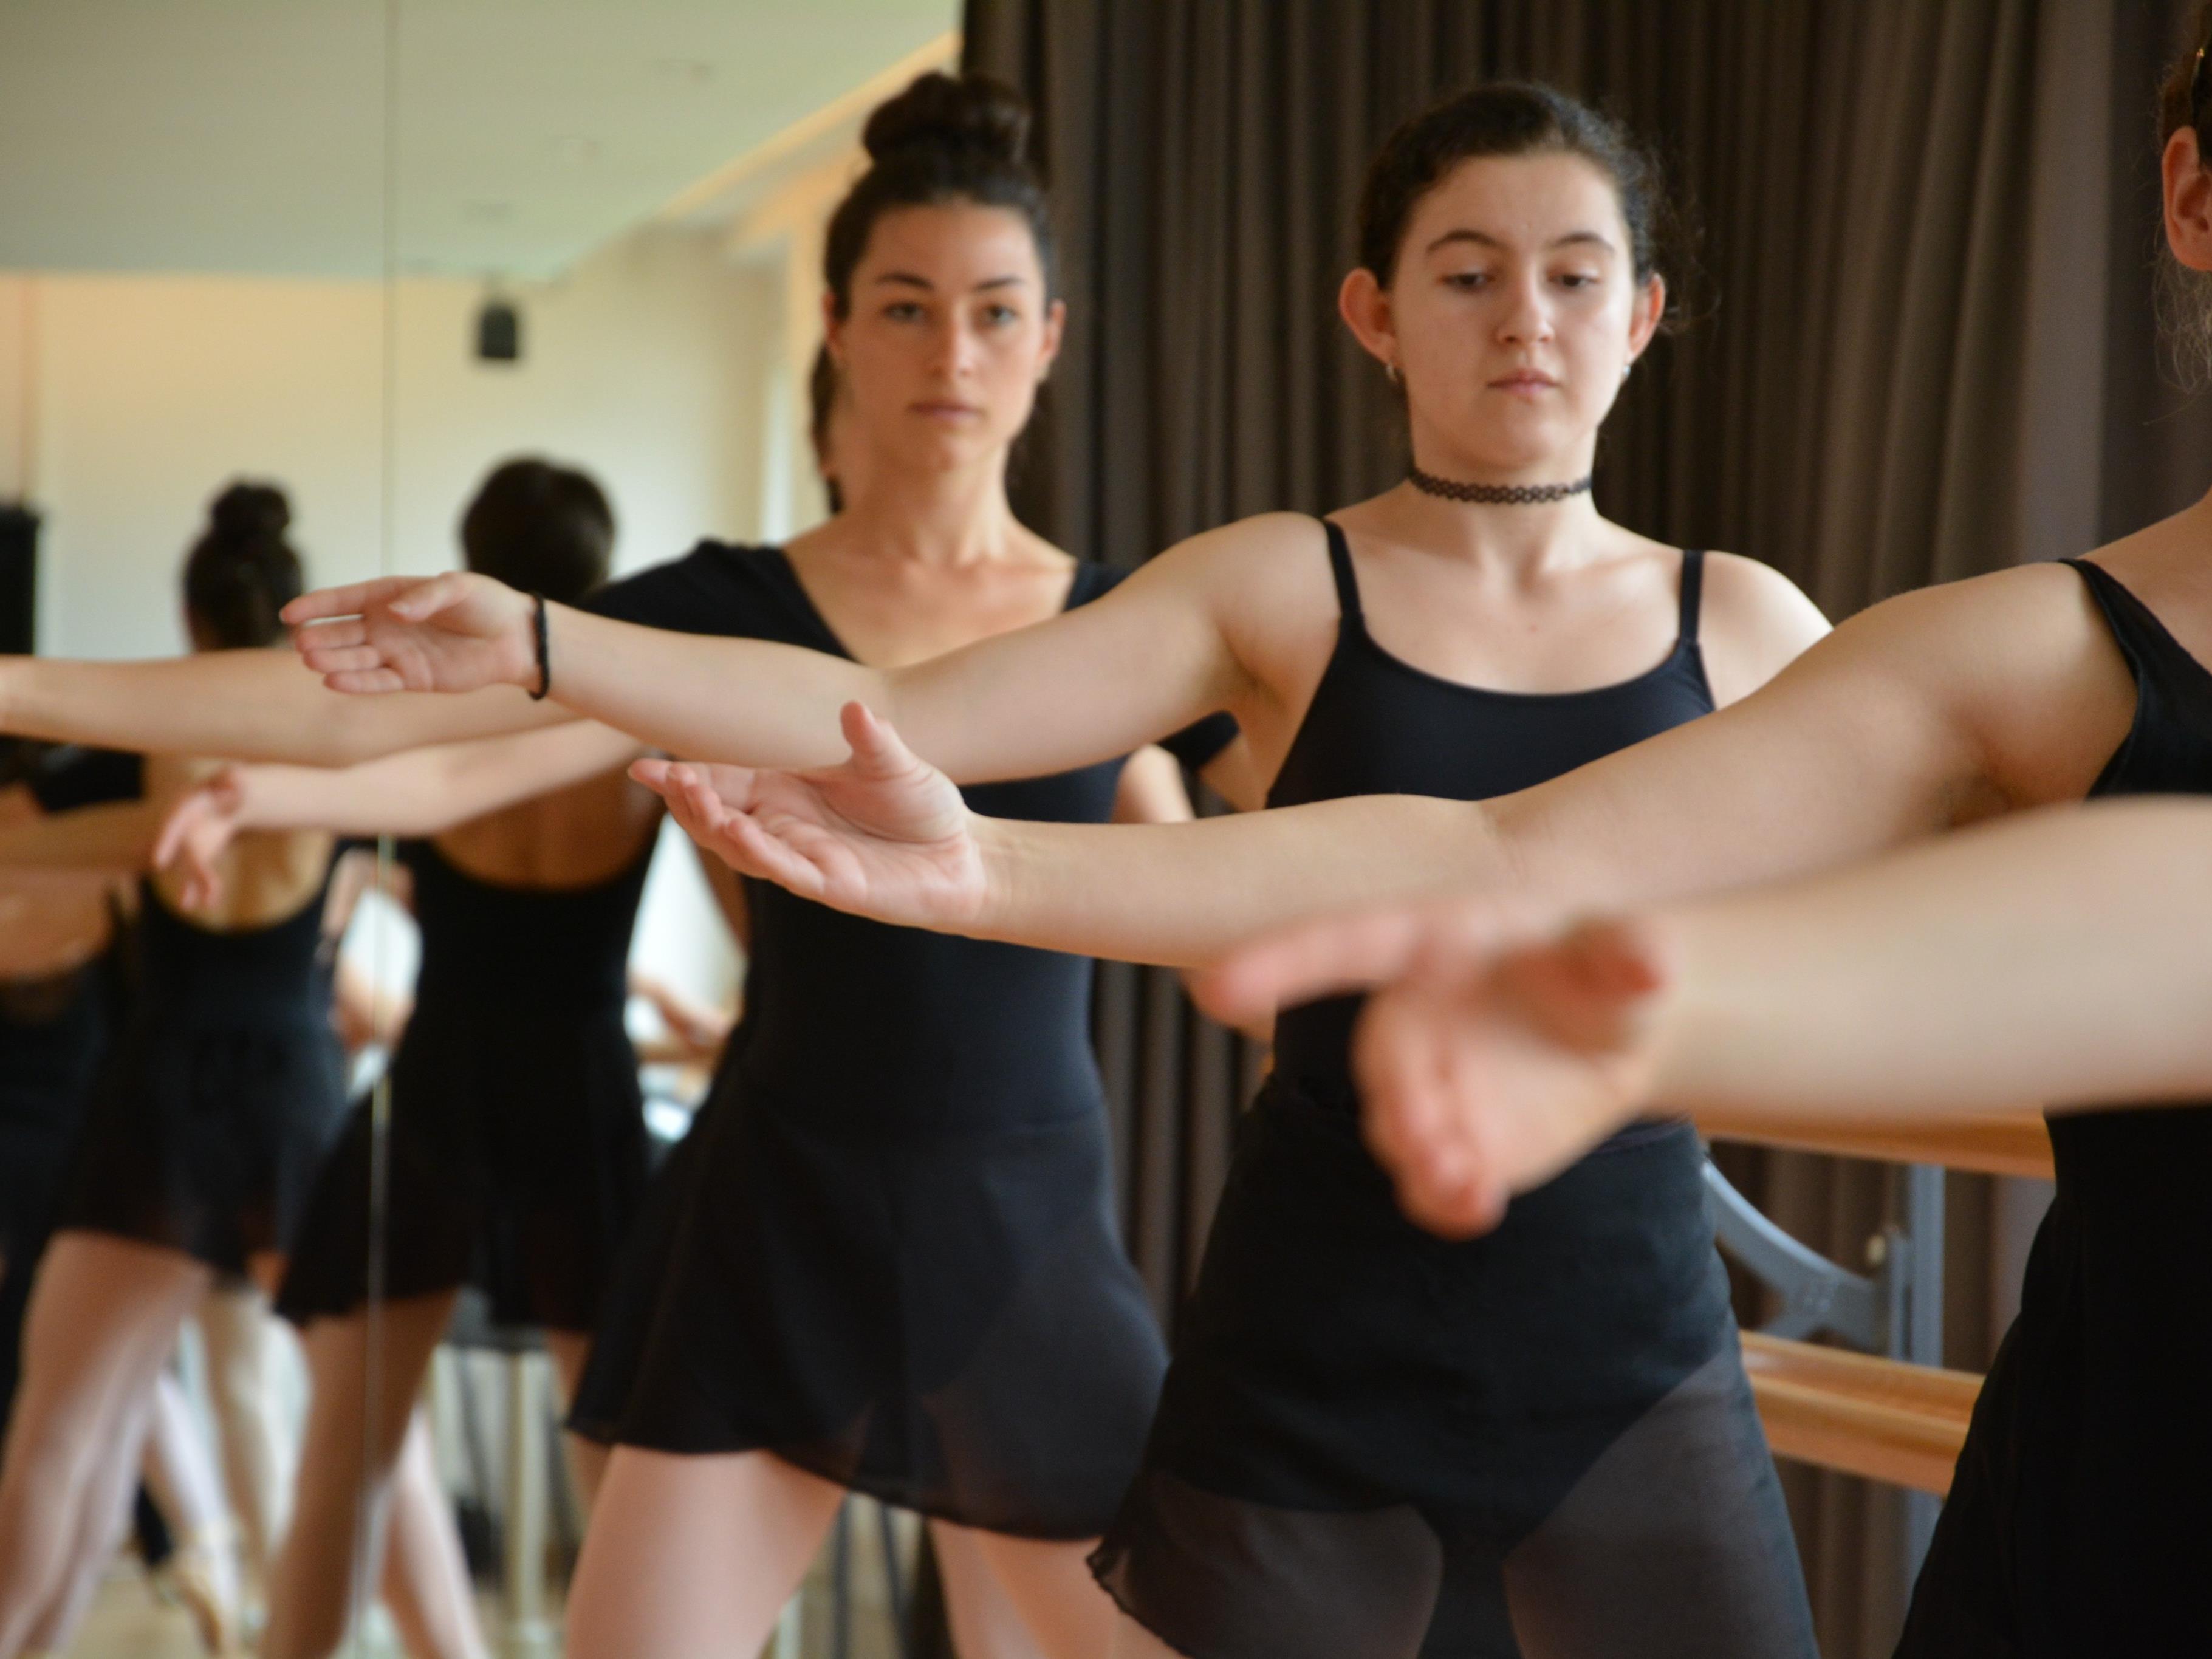 Vom 6. bis 10. Juni 2016 lädt die Tanzabteilung der Musikschule zum Schnuppern ein.